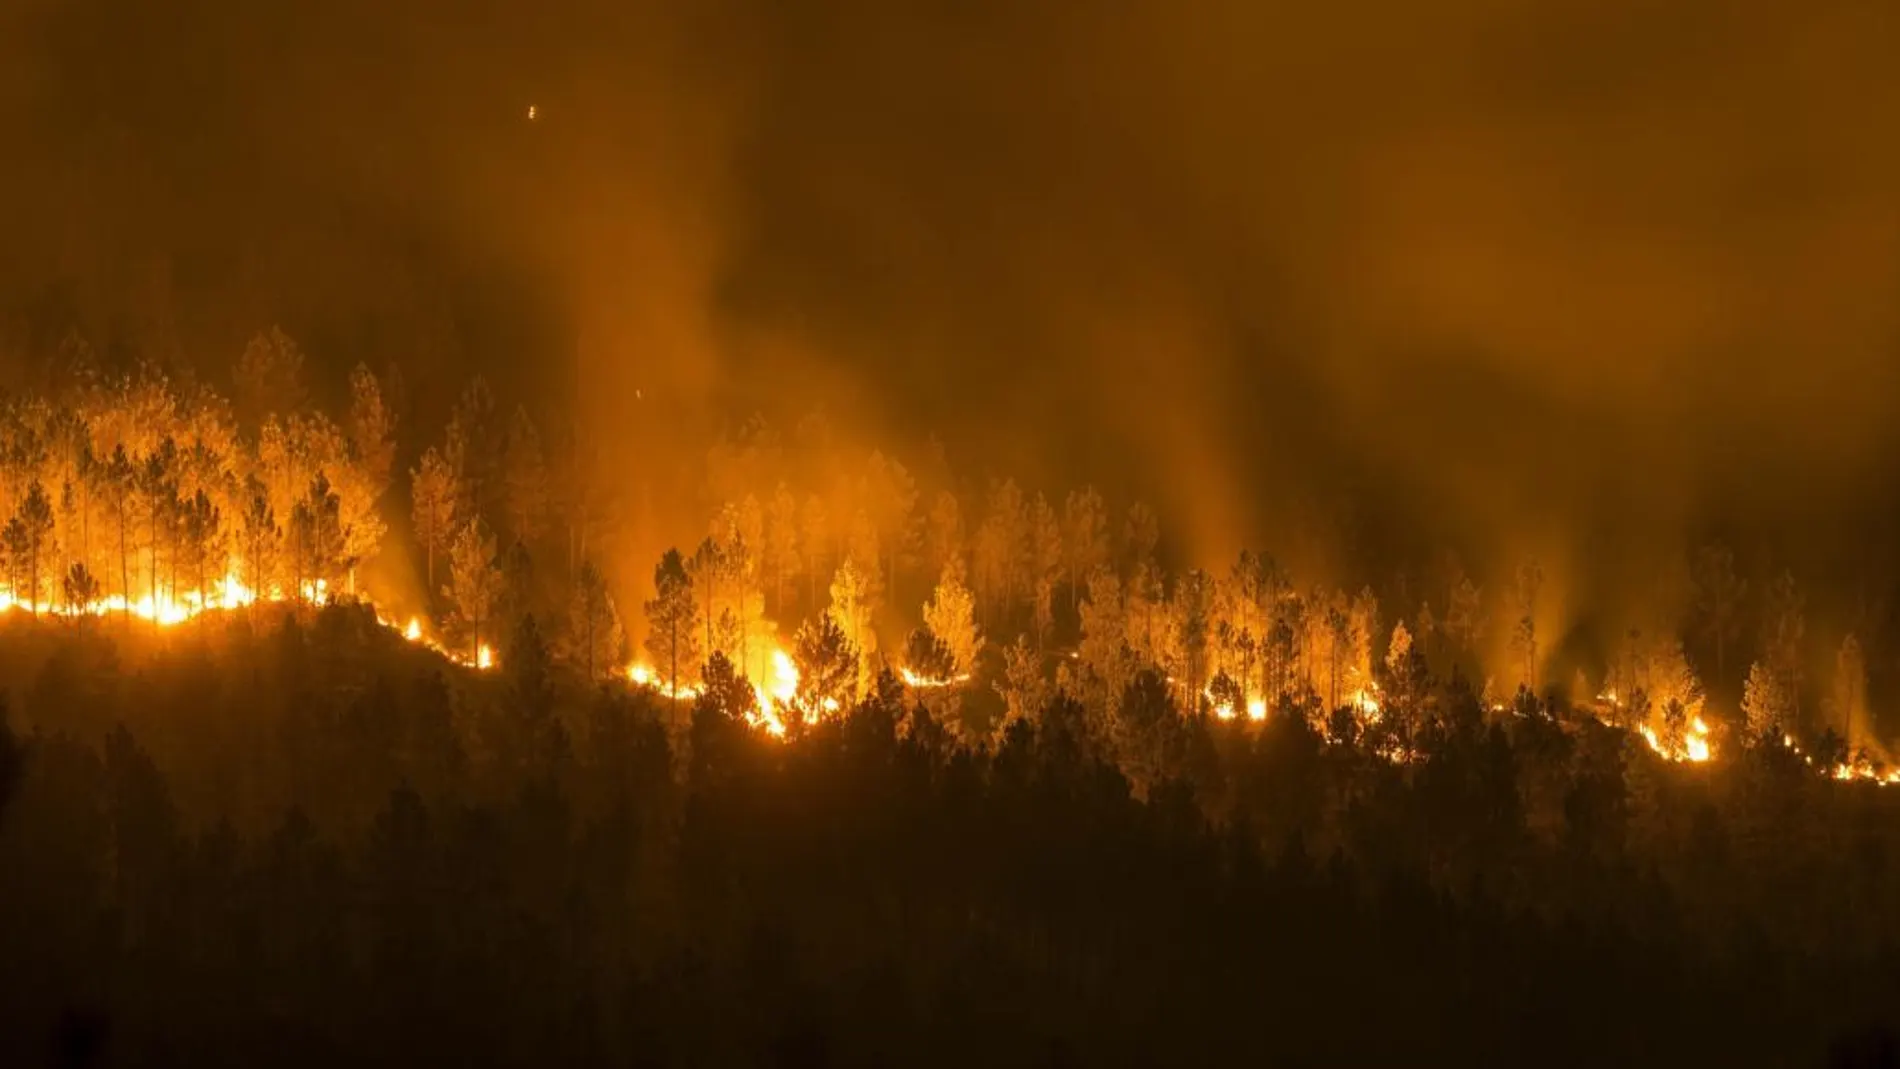 Vista del incendio forestal declarado en la localidad orensana de Entrimo, uno de los muchos incendios forestales sin control